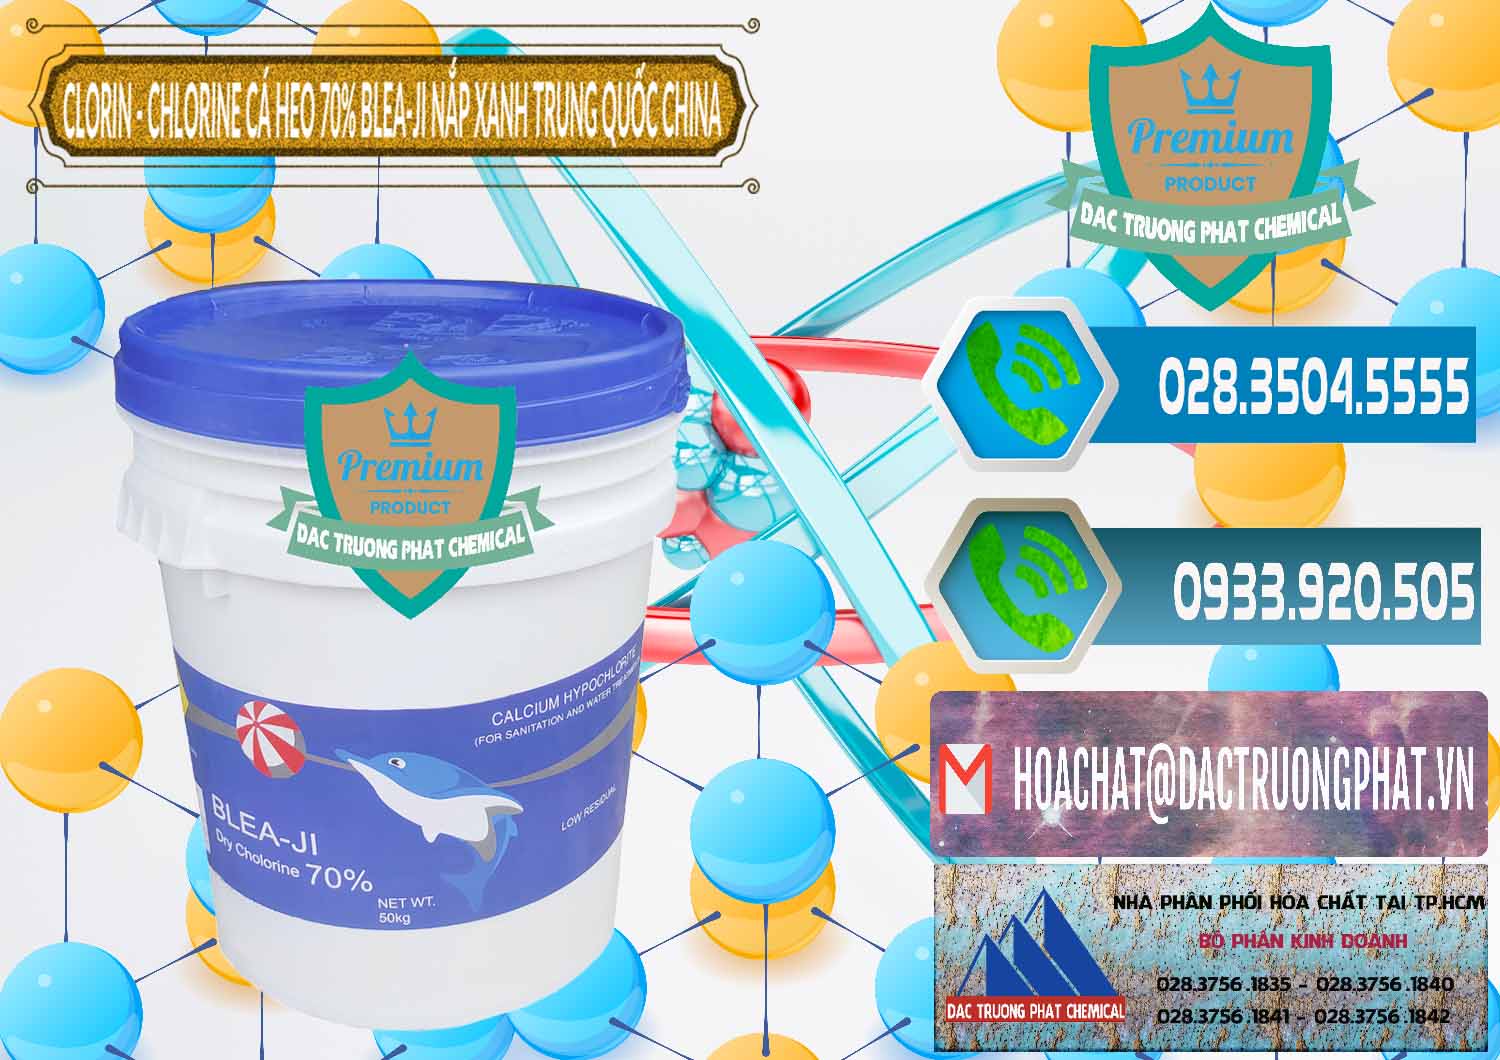 Đơn vị chuyên phân phối & bán Clorin - Chlorine Cá Heo 70% Cá Heo Blea-Ji Thùng Tròn Nắp Xanh Trung Quốc China - 0208 - Đơn vị kinh doanh ( cung cấp ) hóa chất tại TP.HCM - congtyhoachat.net